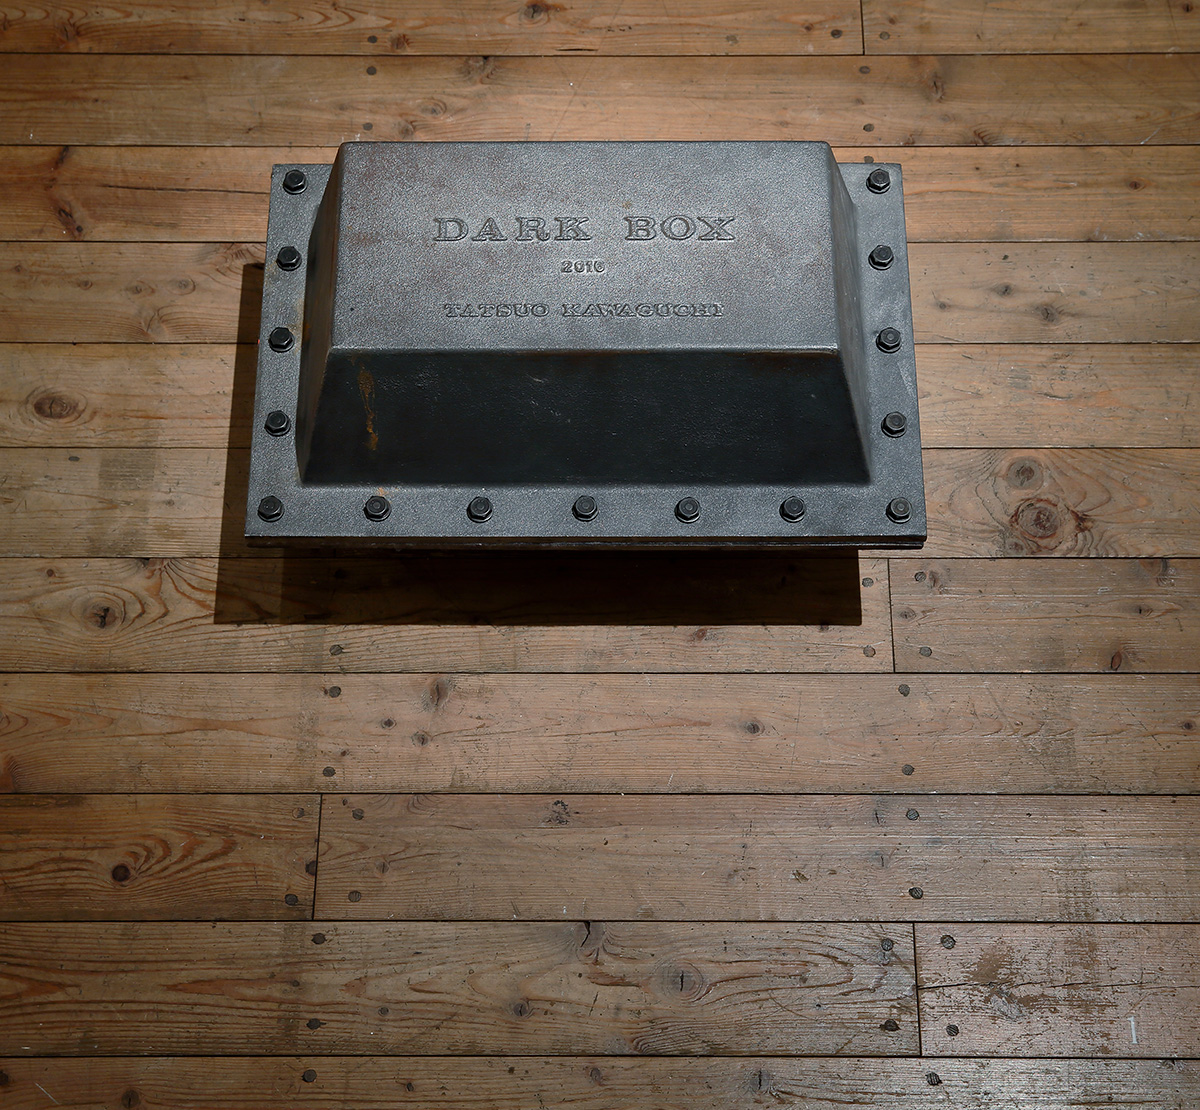 DARK BOX 2016 - 地下からの闇